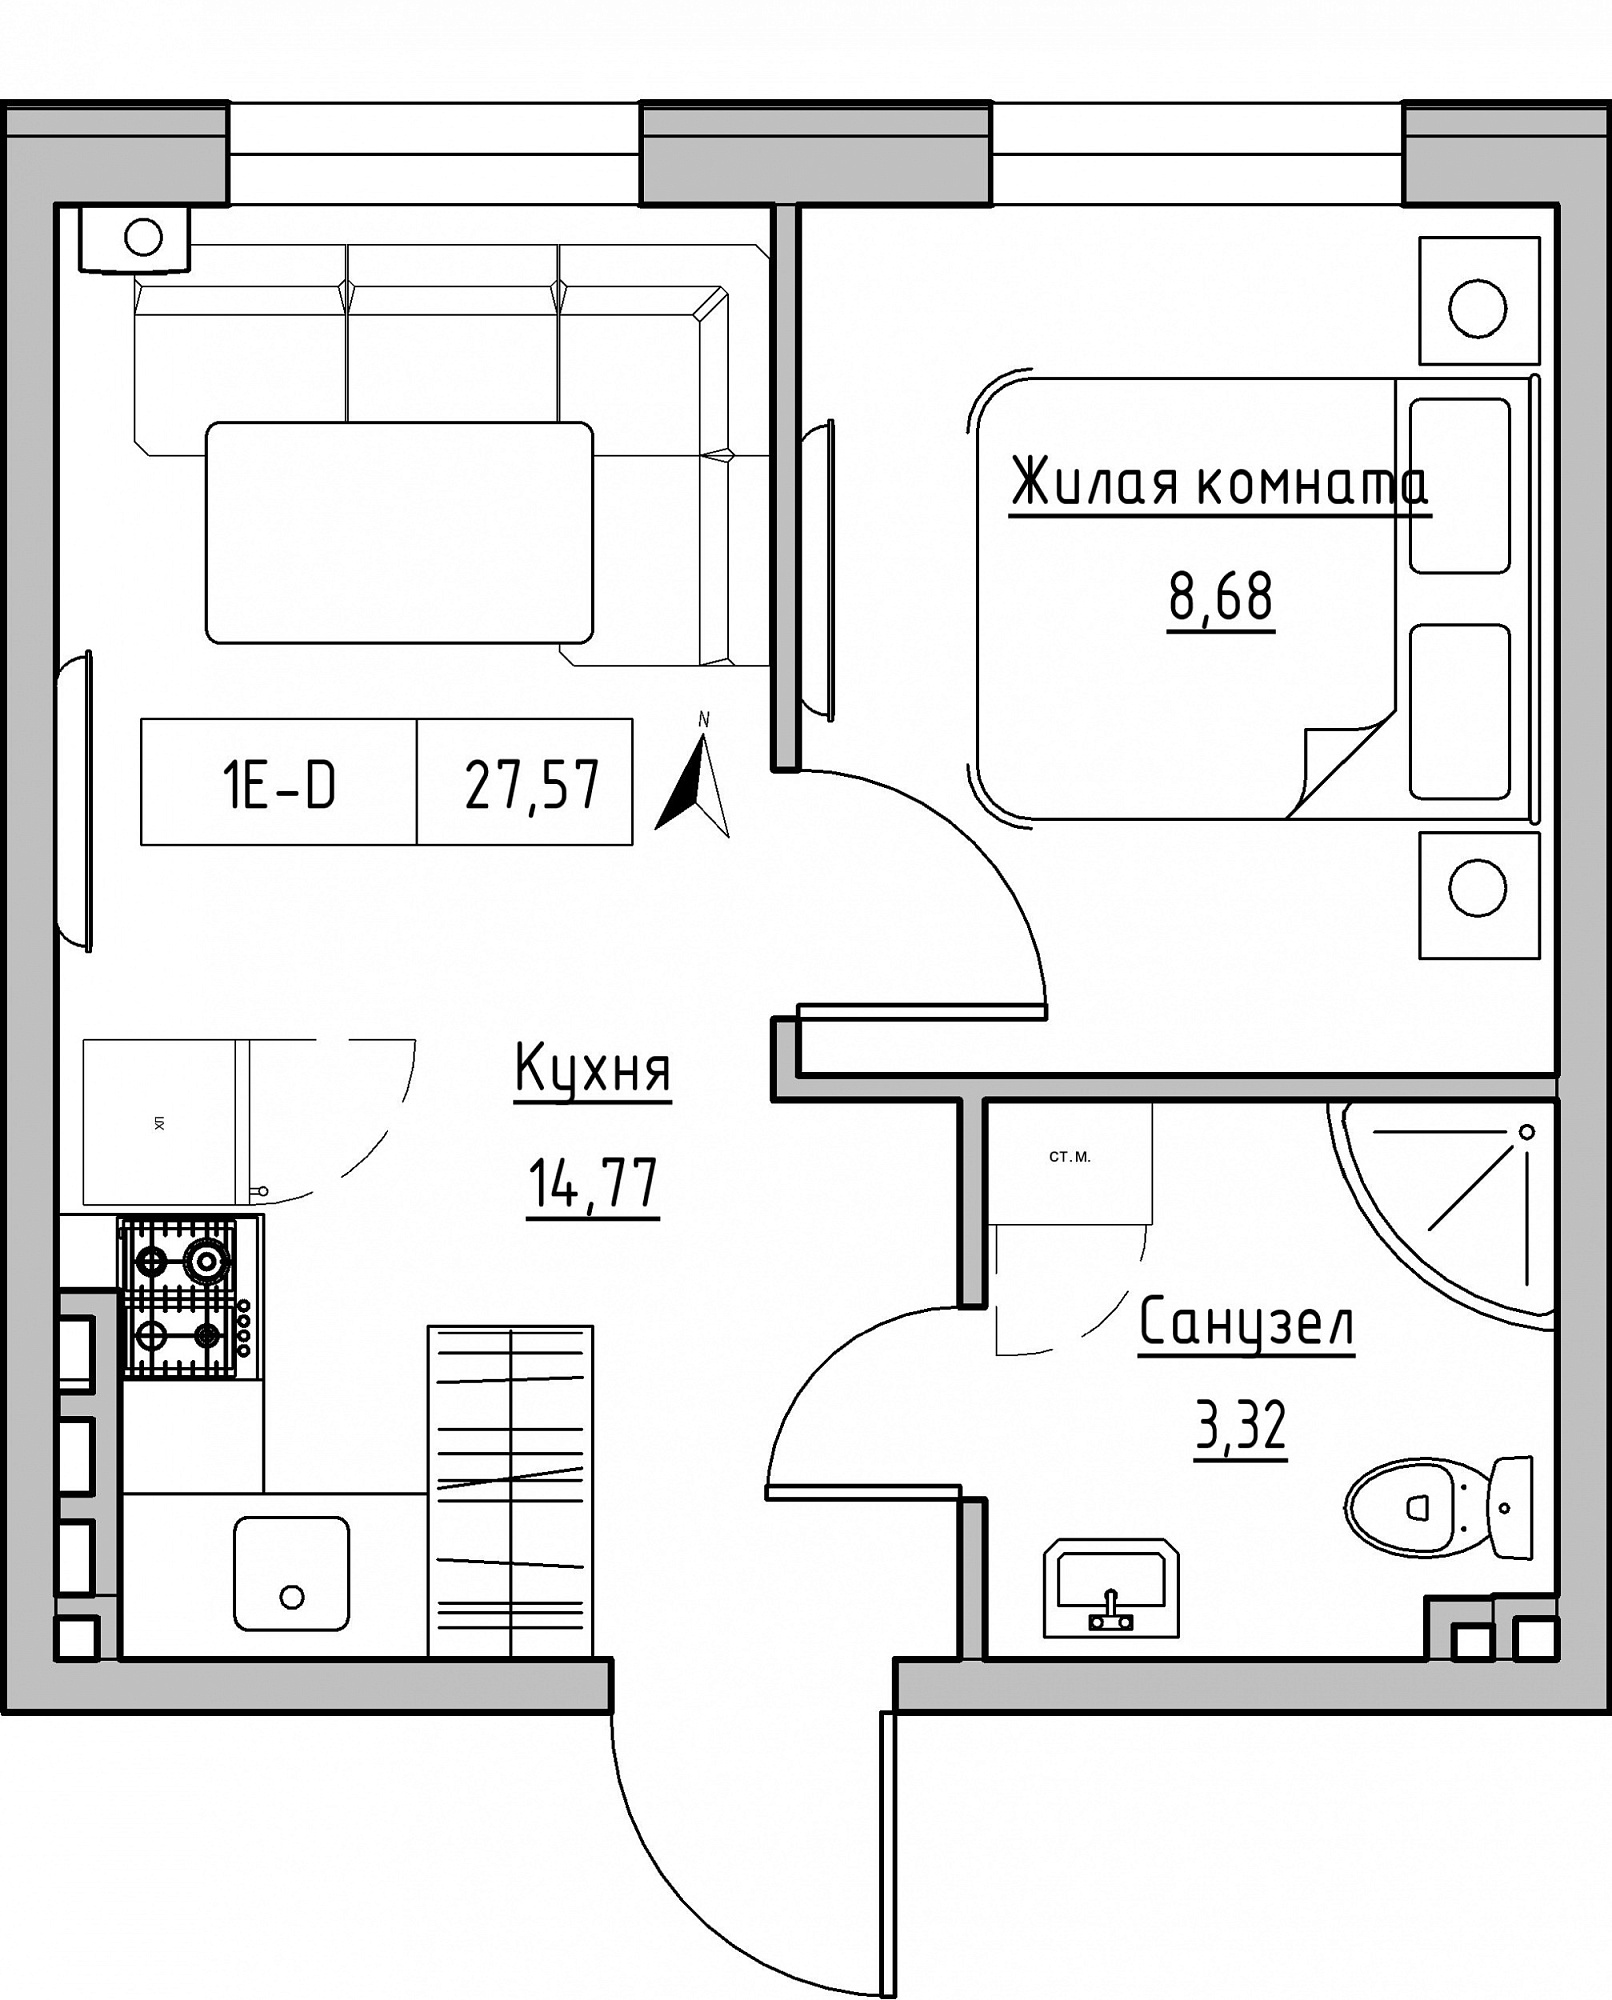 Планировка 1-к квартира площей 27.57м2, KS-024-03/0002.